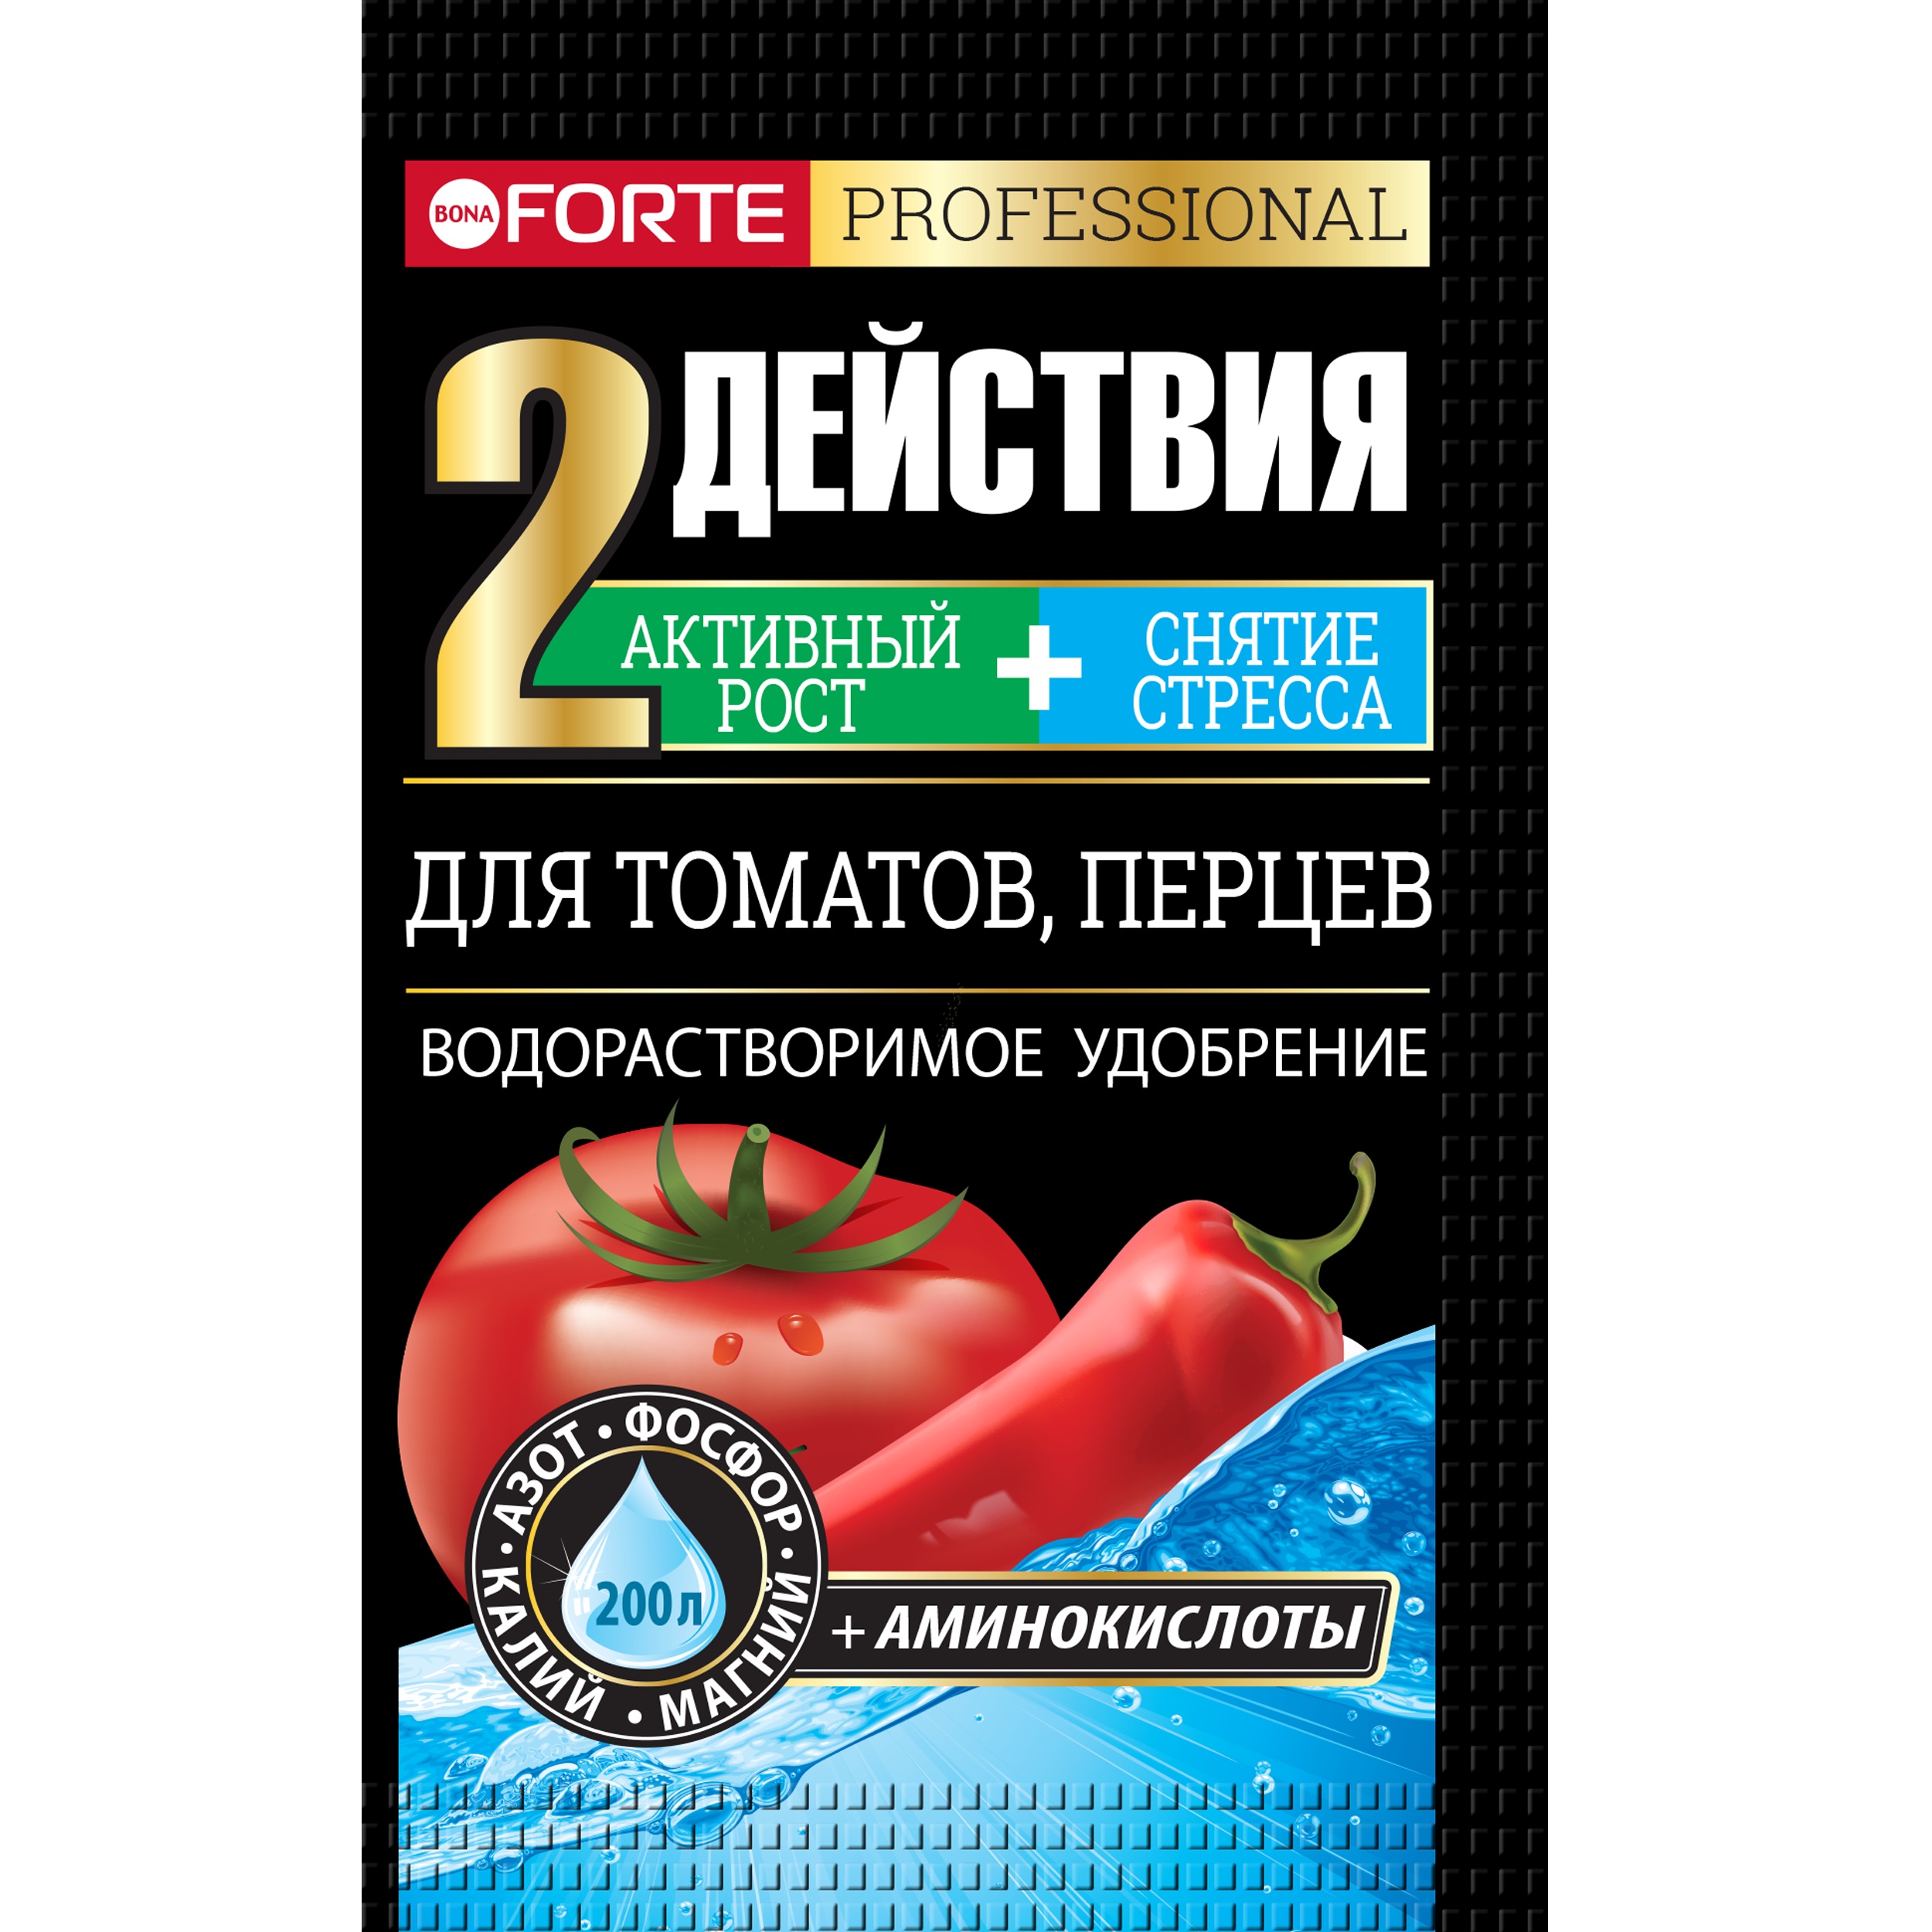 Удобрение Bona forte для томатов и перцев 100г нож для удаления сердцевины из томатов kuchenprofi 09 1400 28 00